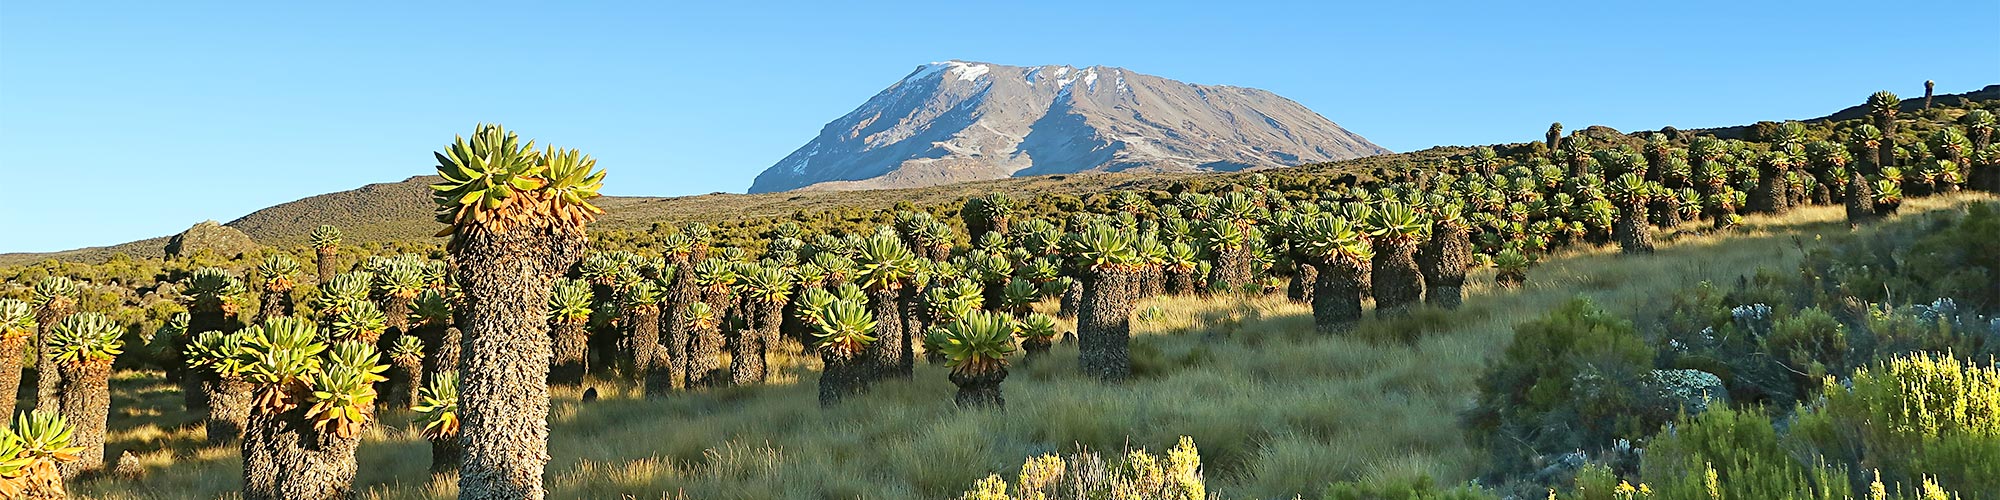 Kilimanjaro Trekking - Kilimanjaro-Besteigung mit Schweizer Profis